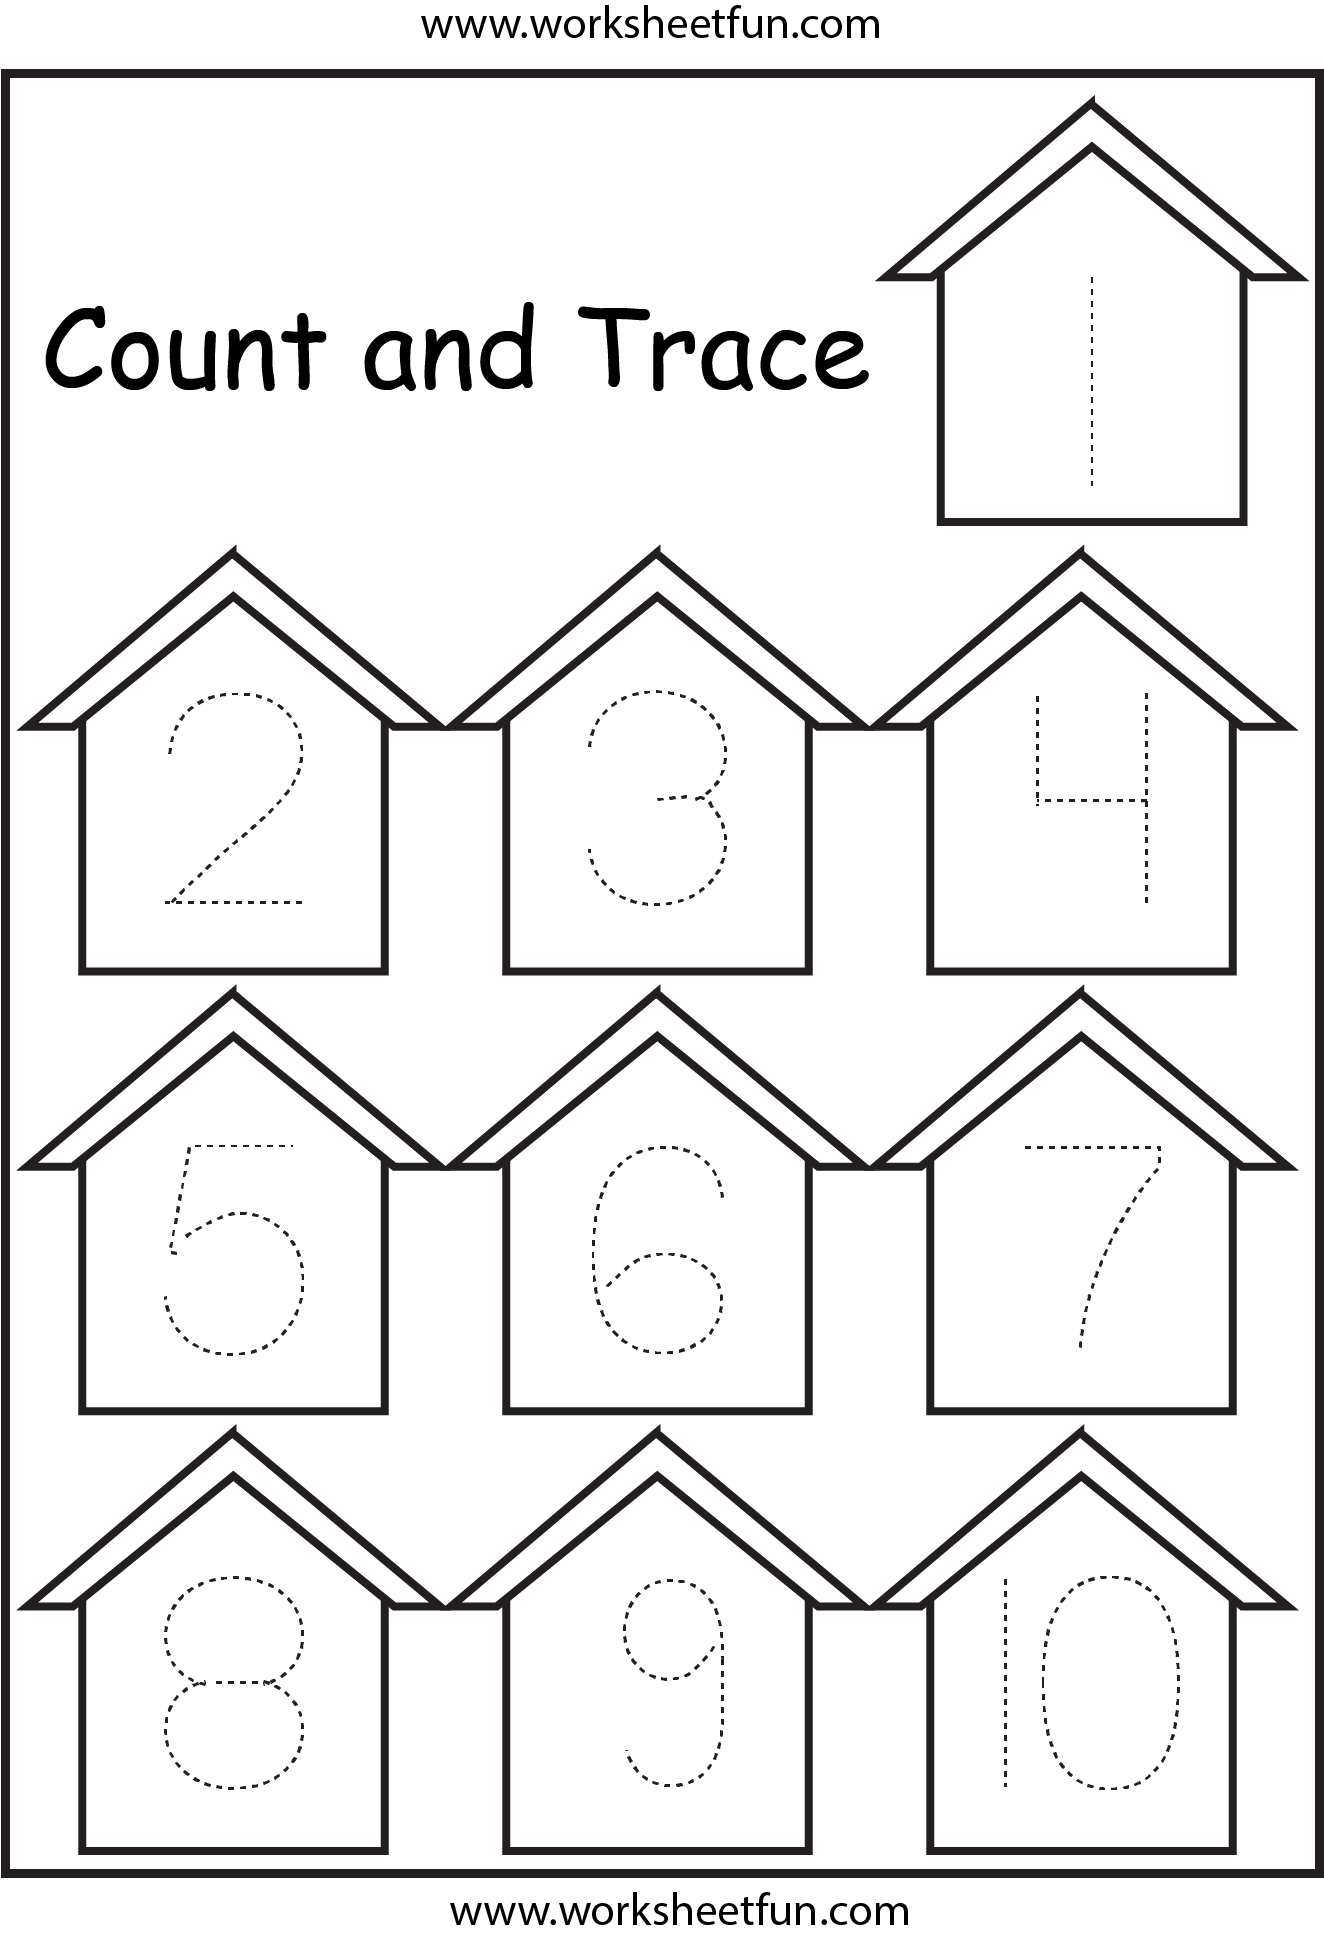 number-tracing-1-10-worksheet-free-preschool-worksheets-numbers-images